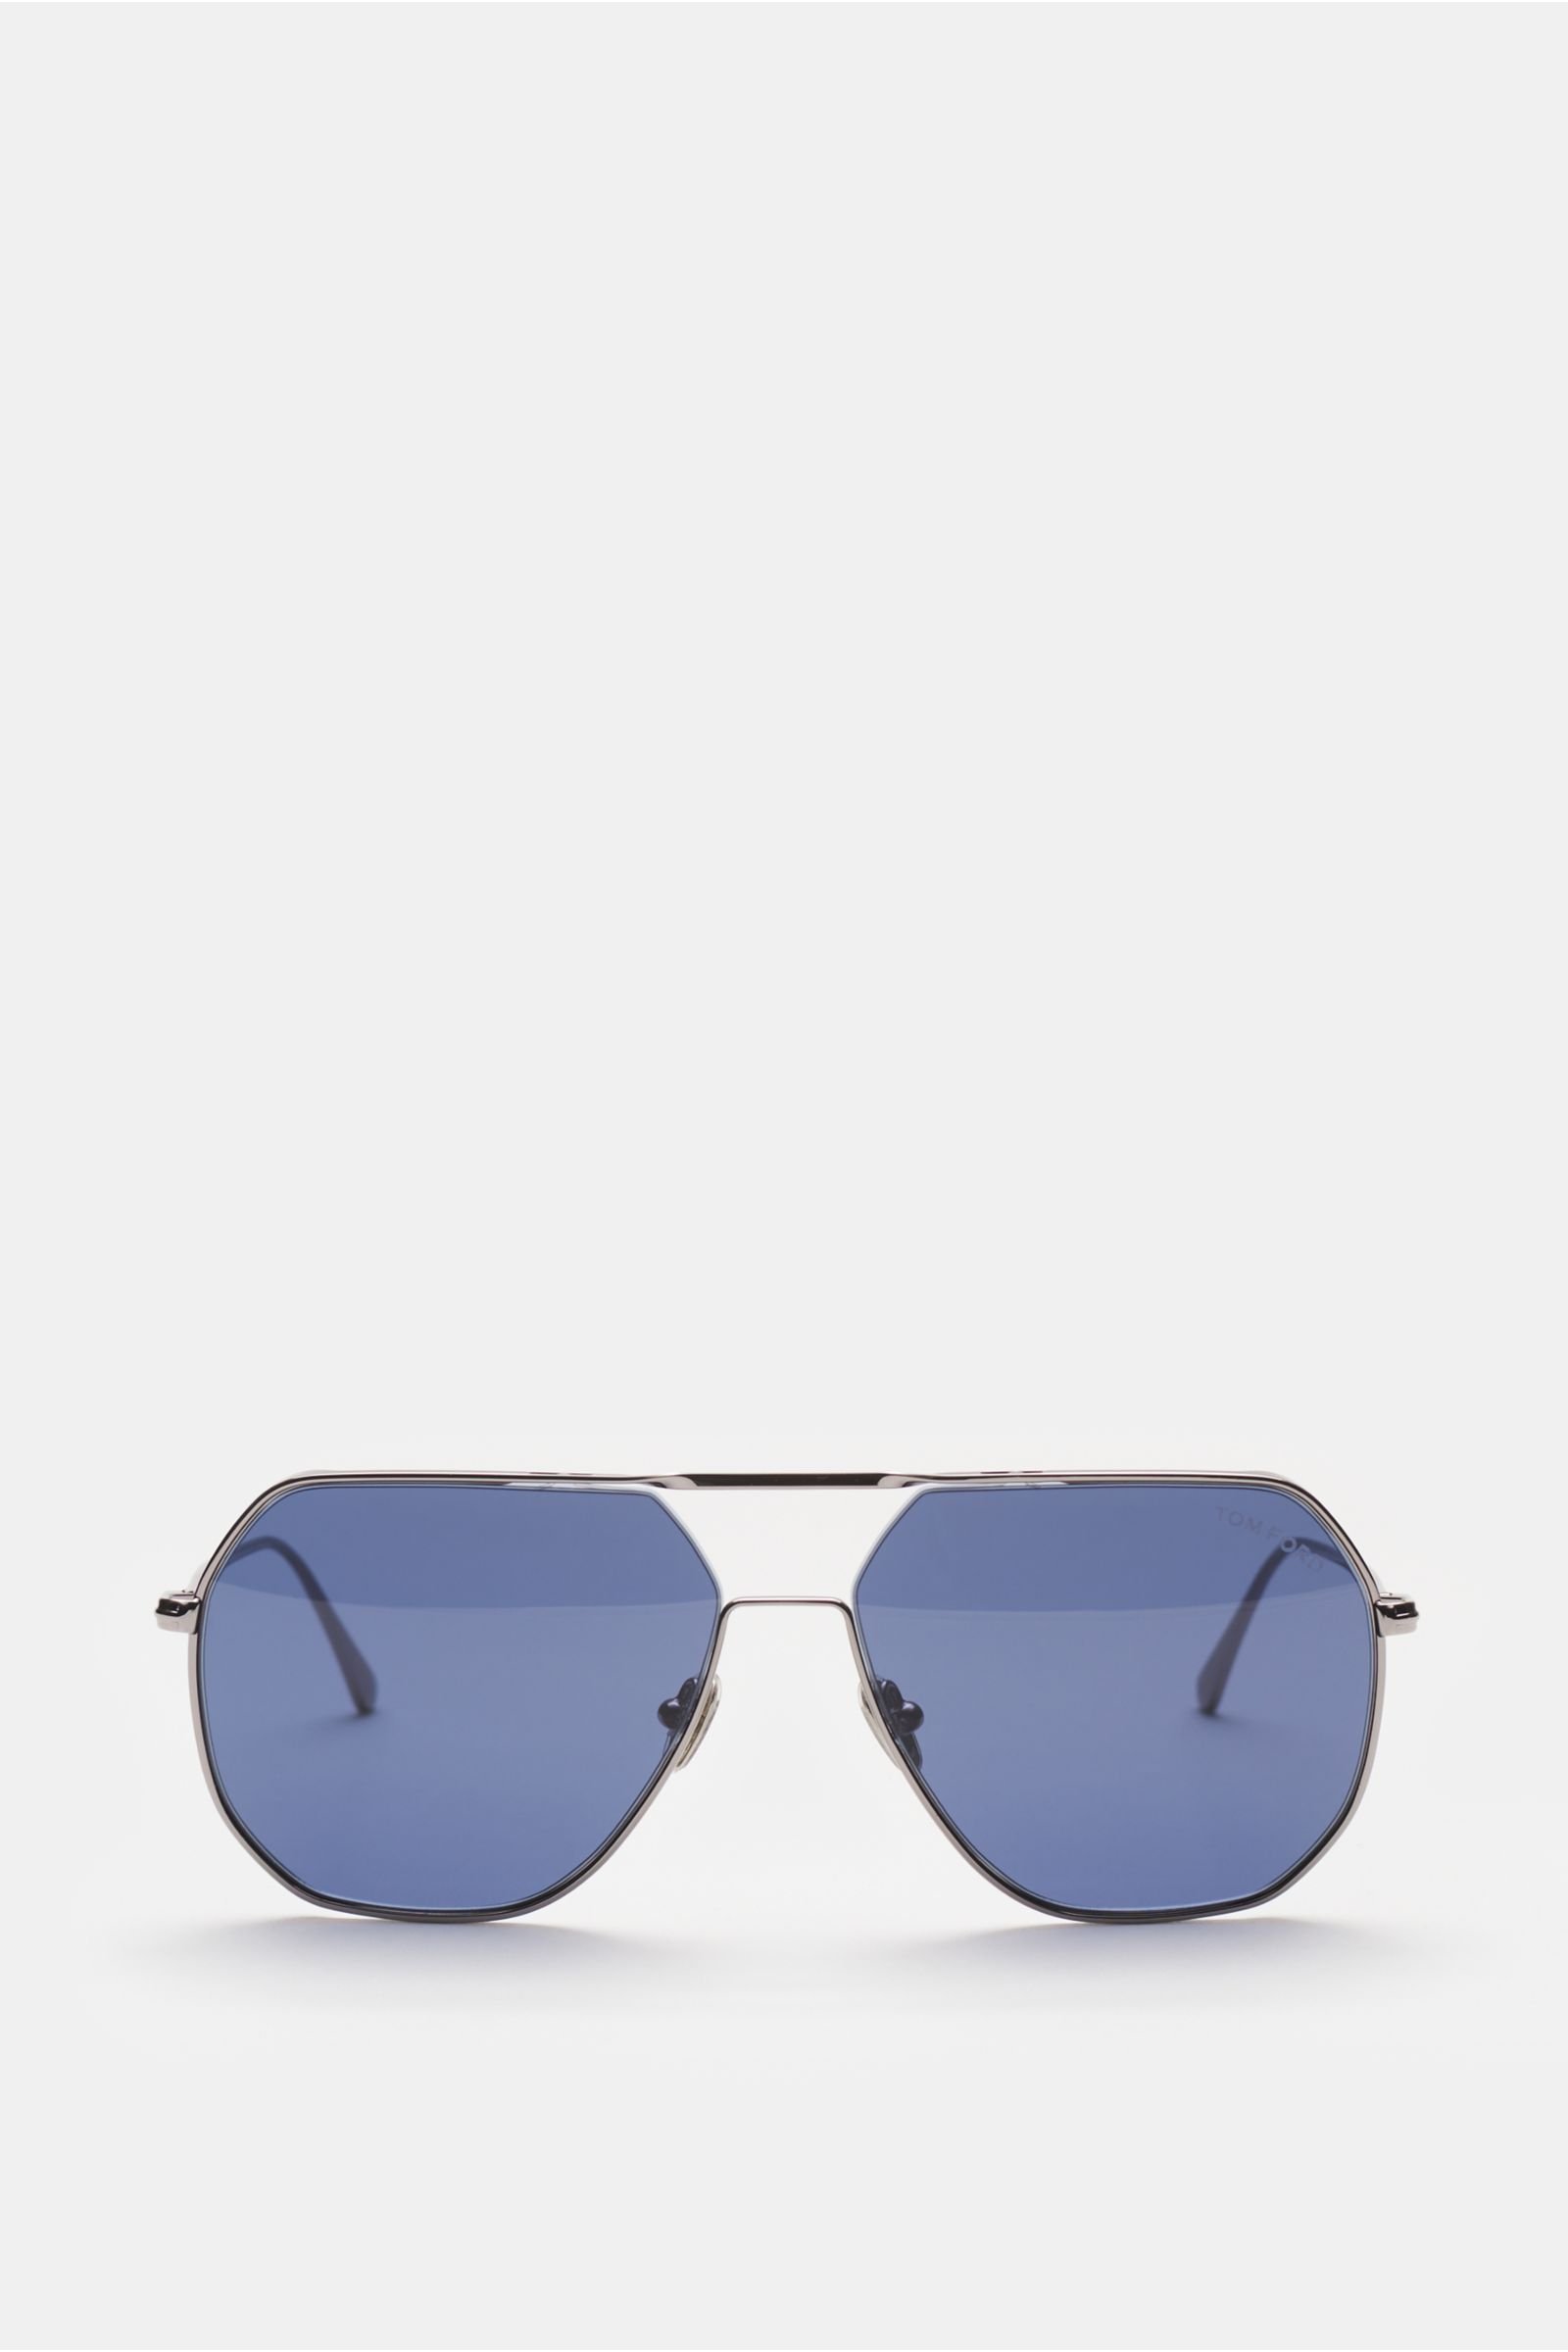 Sonnenbrille 'Gilles' silber/dunkelblau